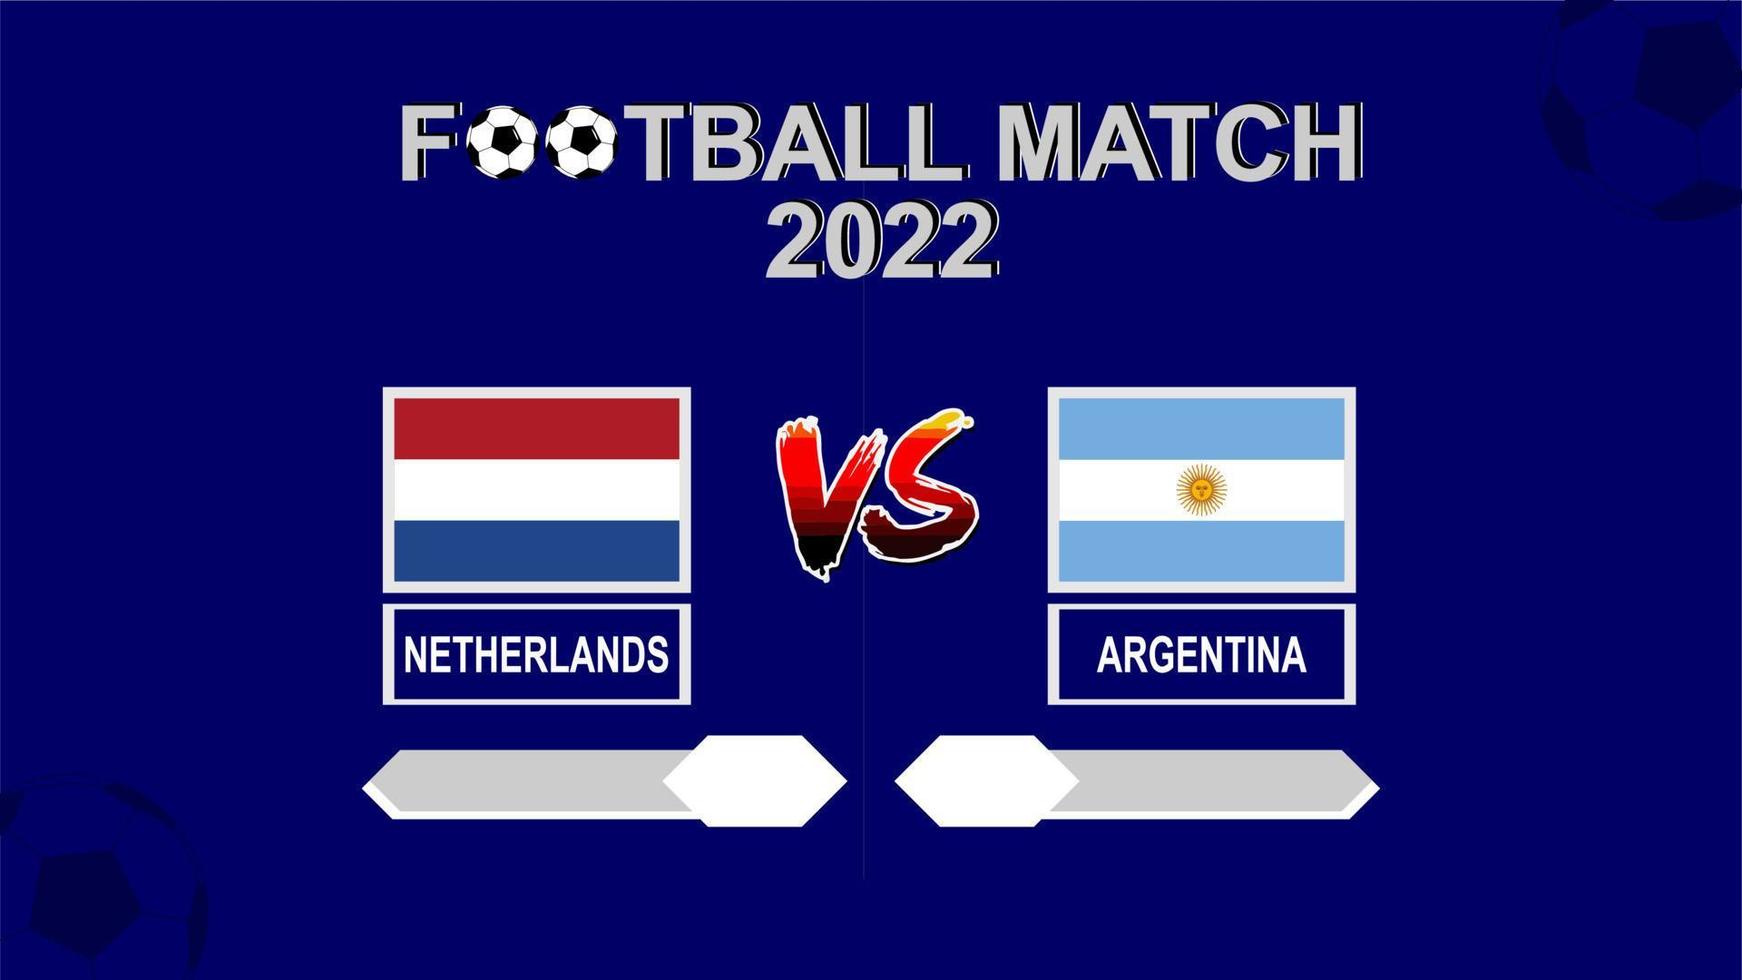 nederländerna mot argentina fotboll kopp 2022 blå mall bakgrund vektor för schema eller resultat match